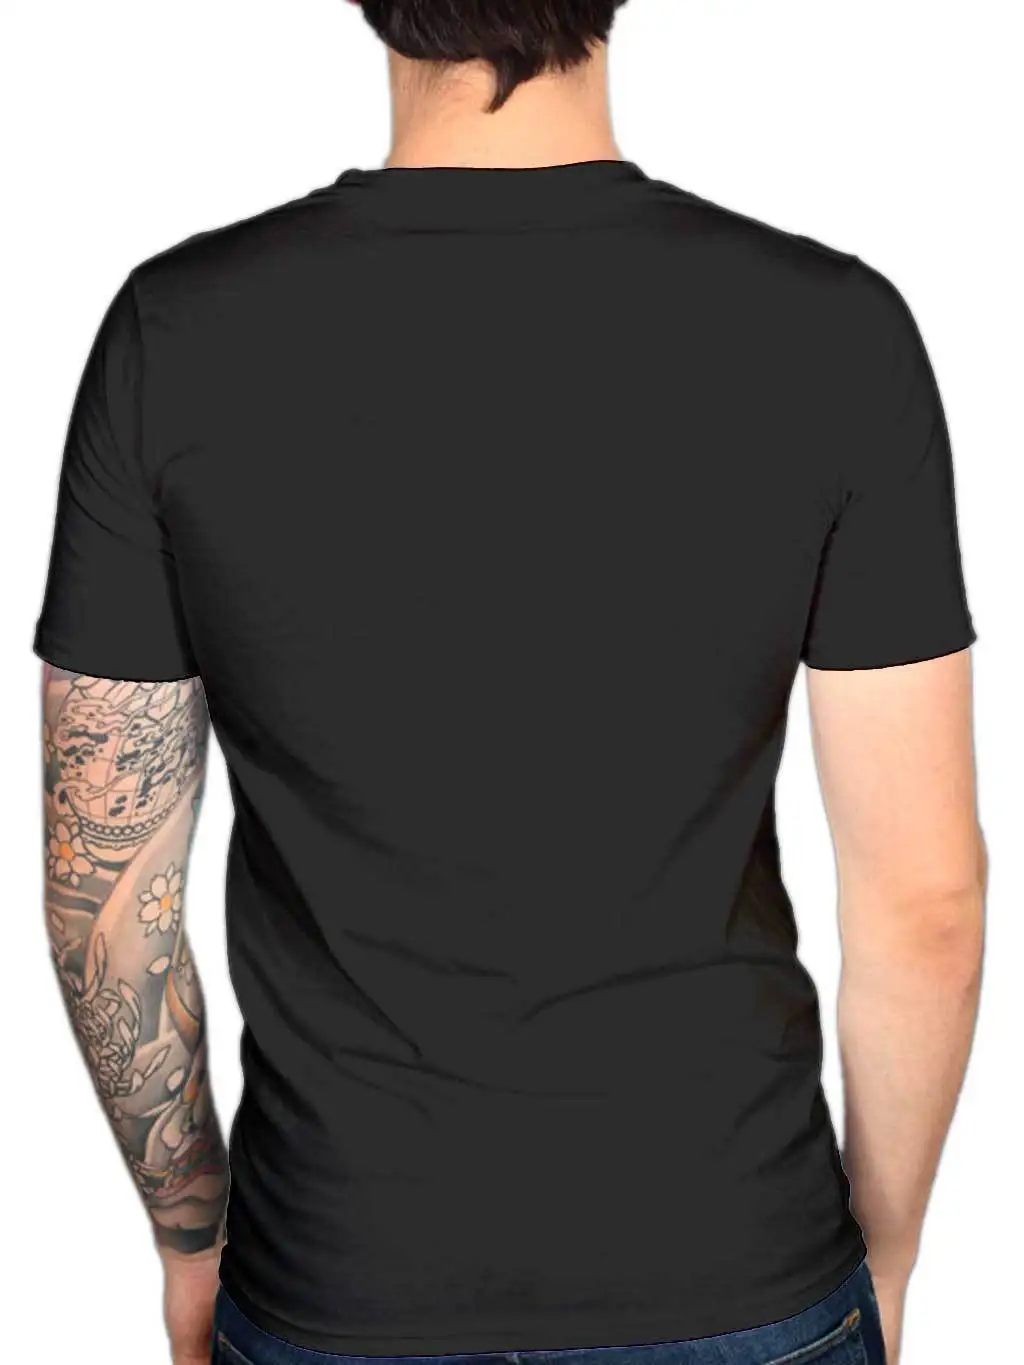 Мужская футболка Halo-1610 крутая Повседневная унисекс с логотипом Cowskull Circle модная